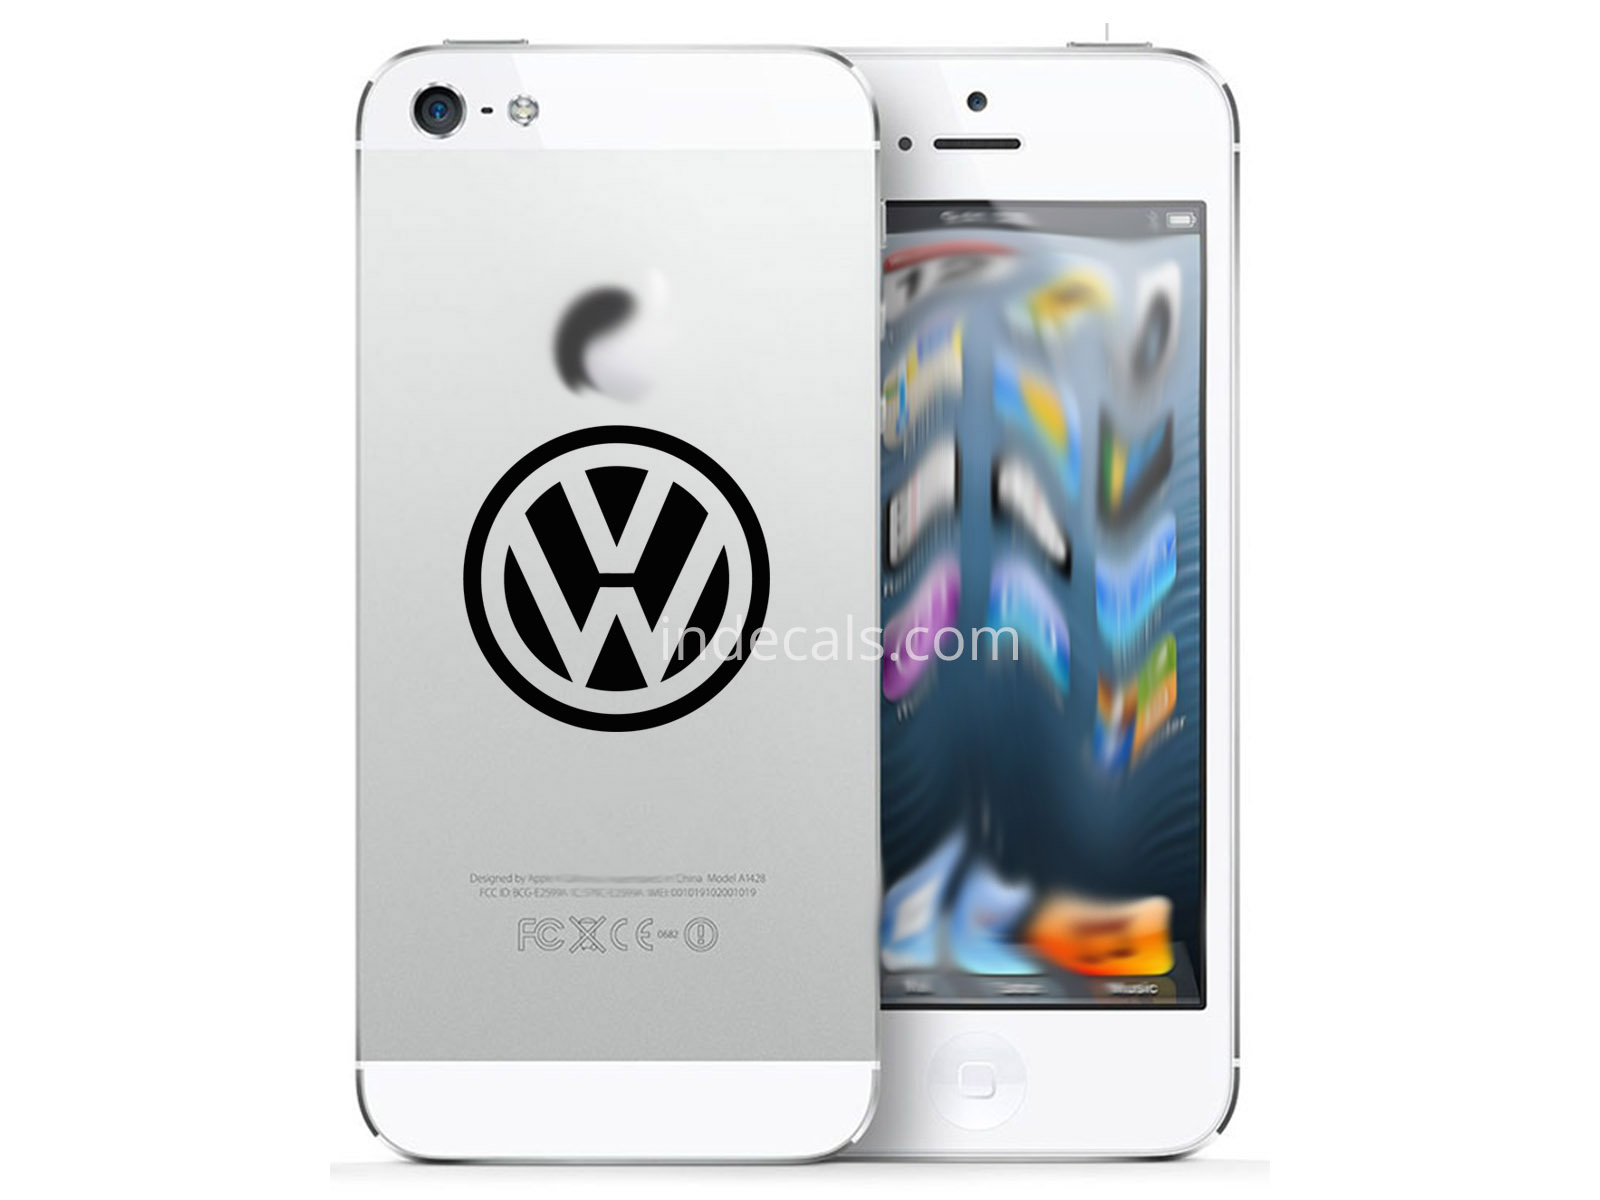 3 x Volkswagen Stickers for Smartphone - Black